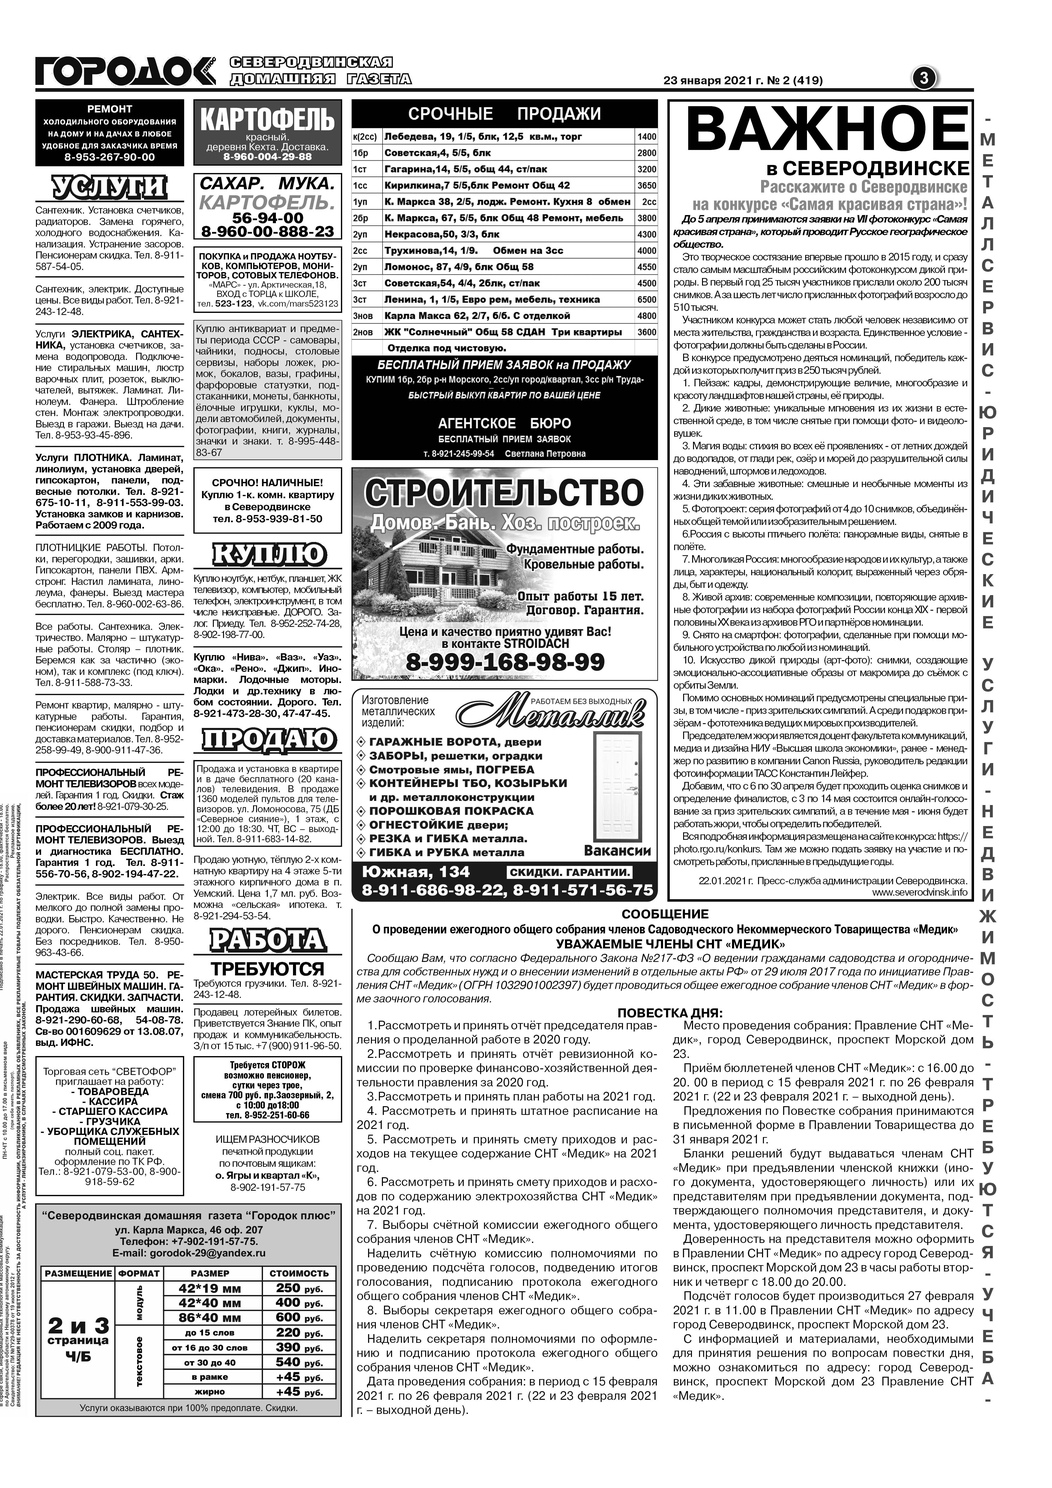 Городок плюс, выпуск номер 2 от 23 января 2021 года, страница 3.